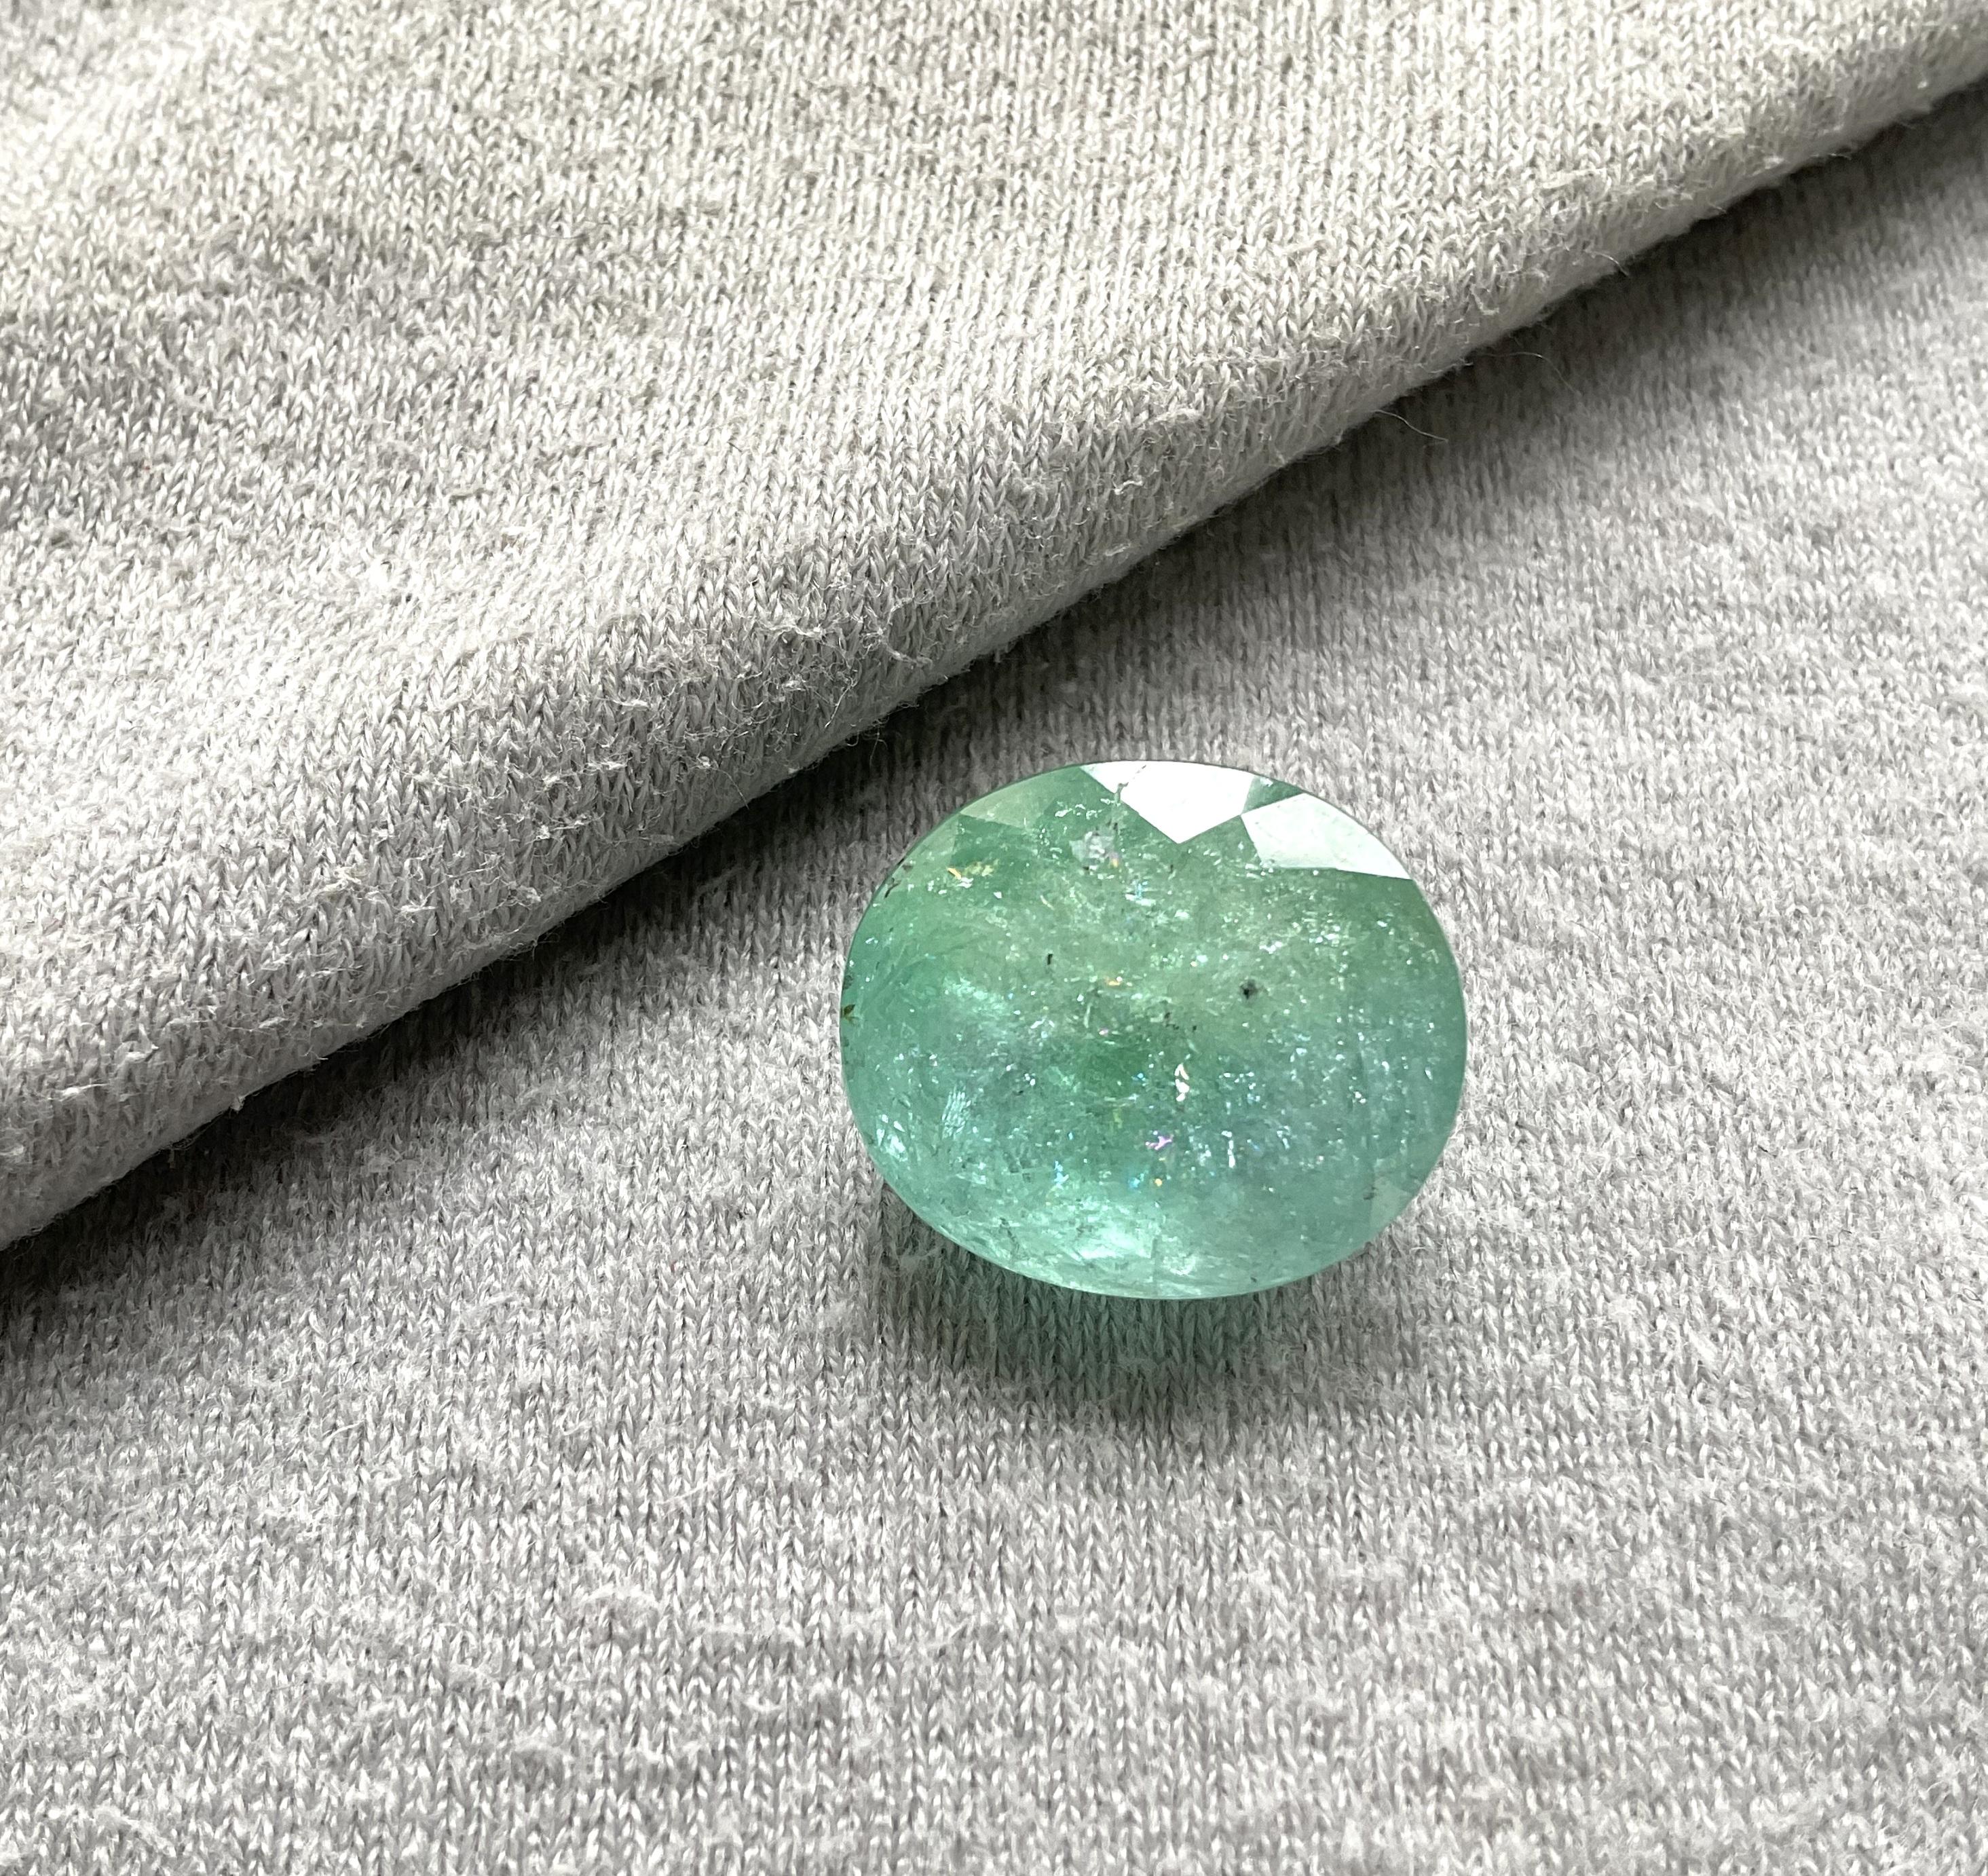 Exceptional Size Bluish Green 15.94 Paraiba Tourmaline Cut Stone for Fine Jewelry
Gemstone - Paraiba Tourmaline
Size - 17X14.5X9 MM
Piece - 1